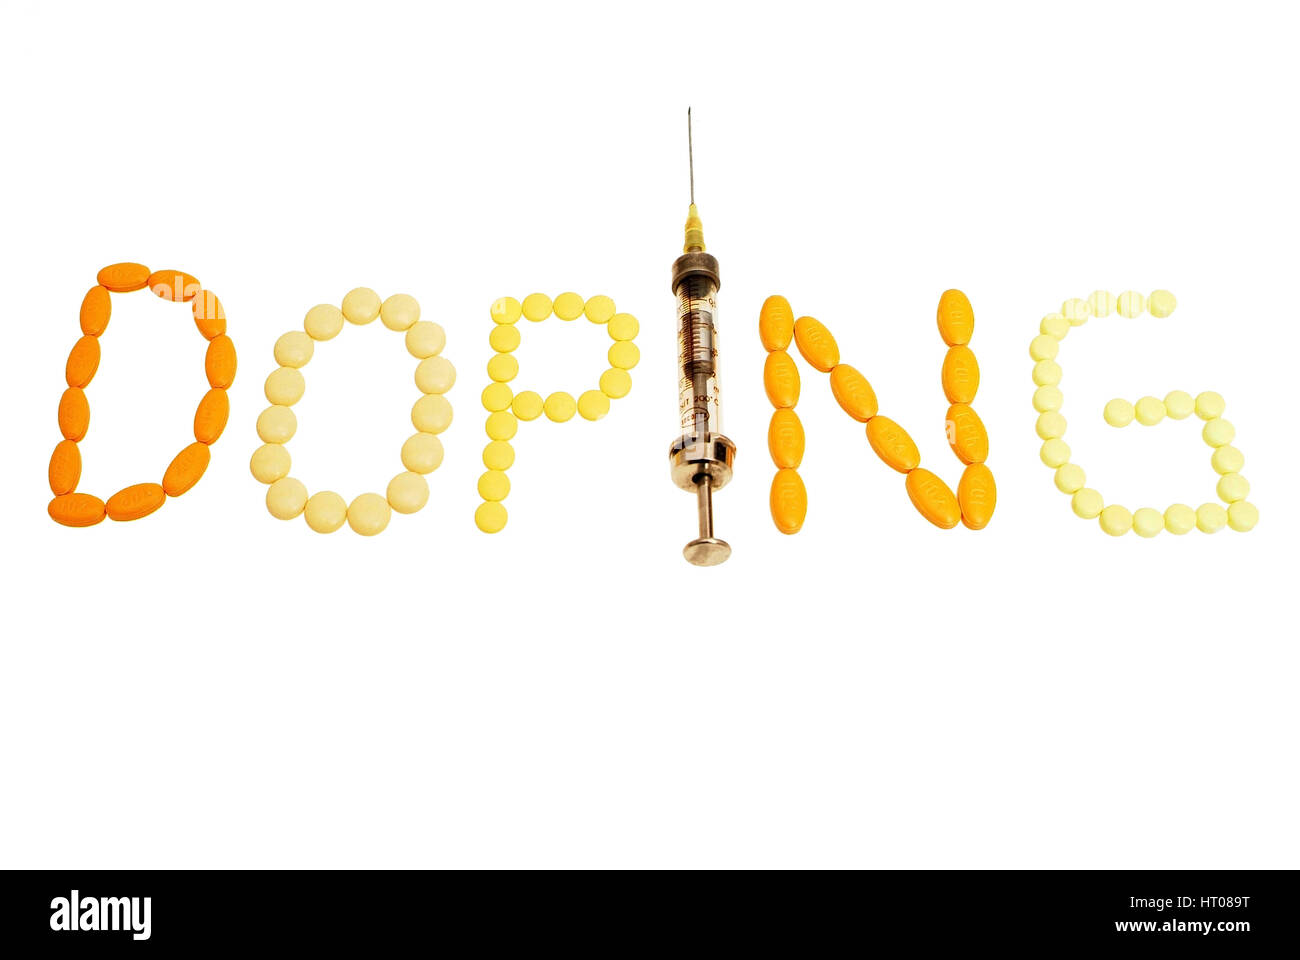 Symbolbild Doping - simbolico per il doping Foto Stock